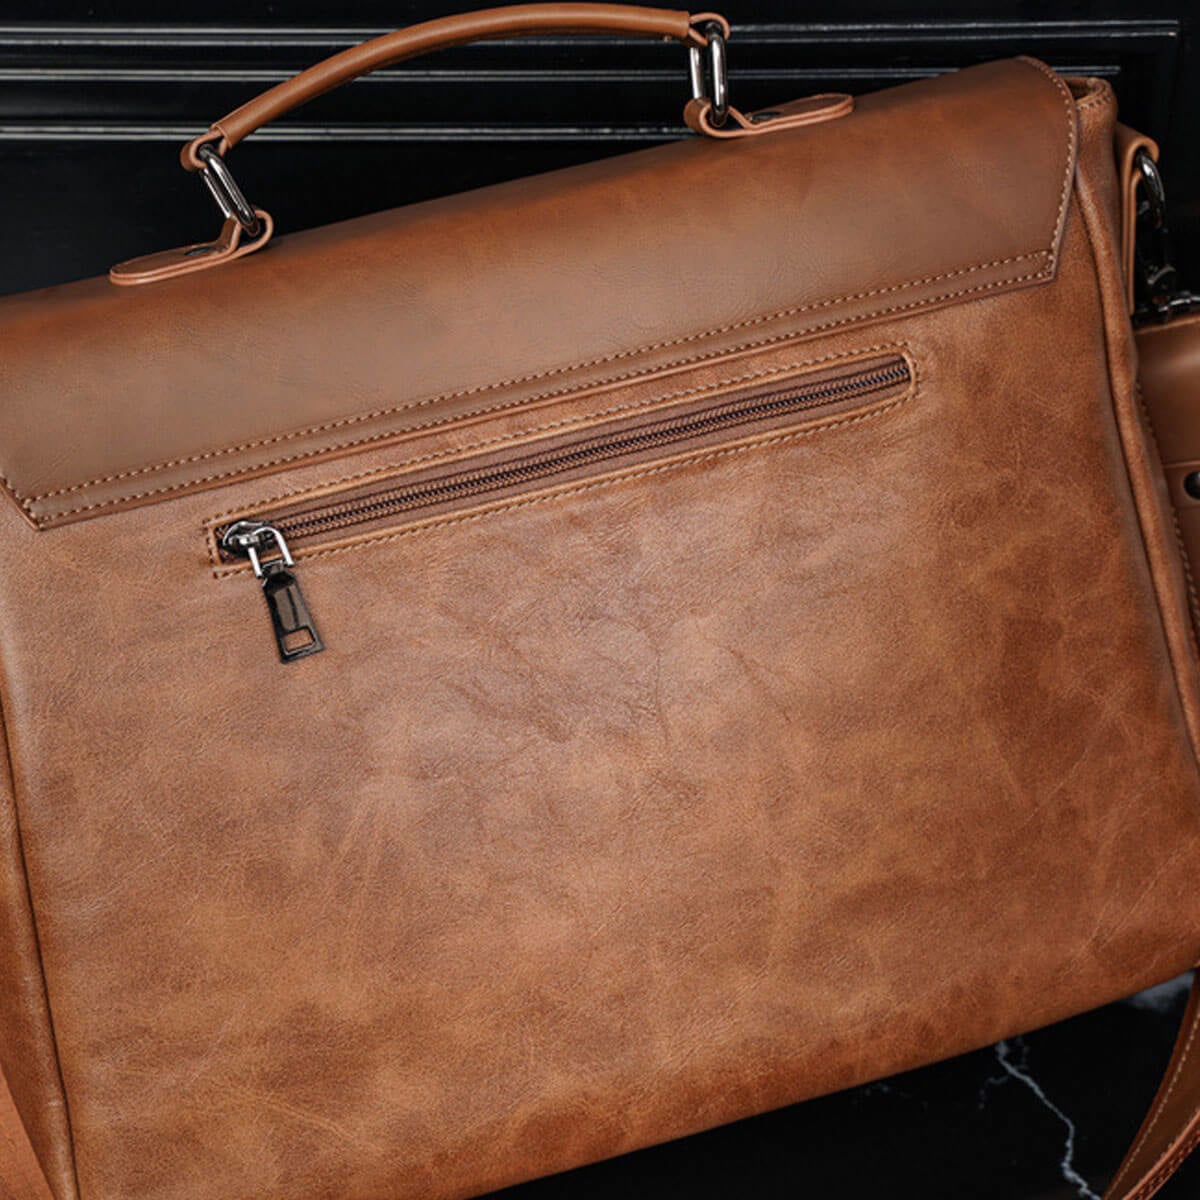 Brown Vintage Leather Business Laptop Messenger Bag